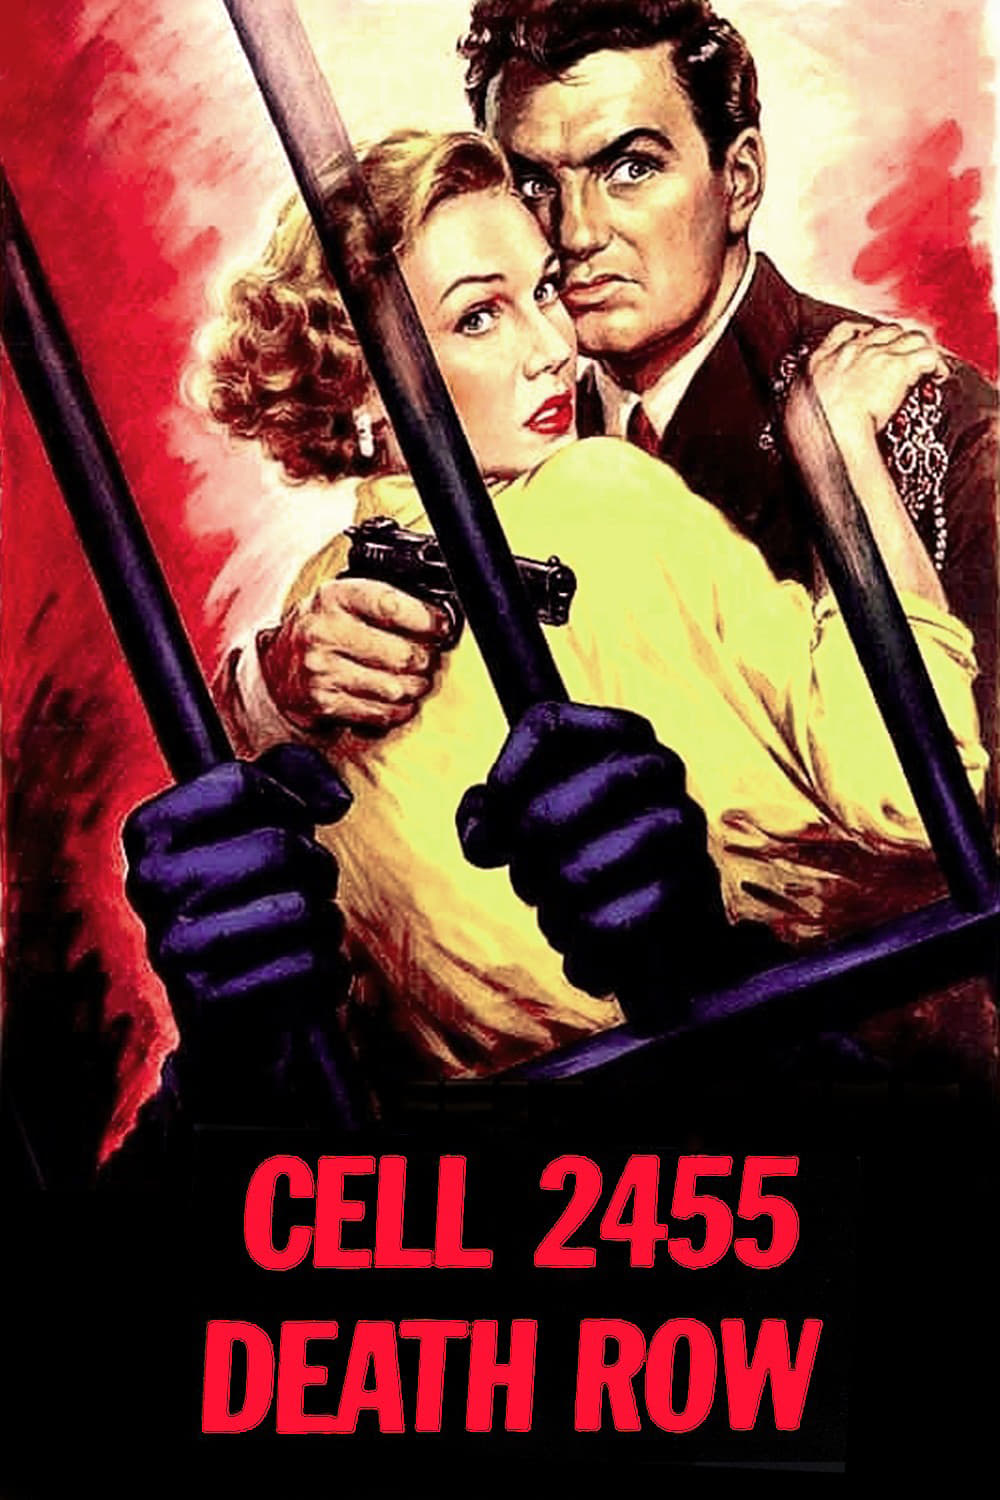 Cell 2455 Death Row (1955)